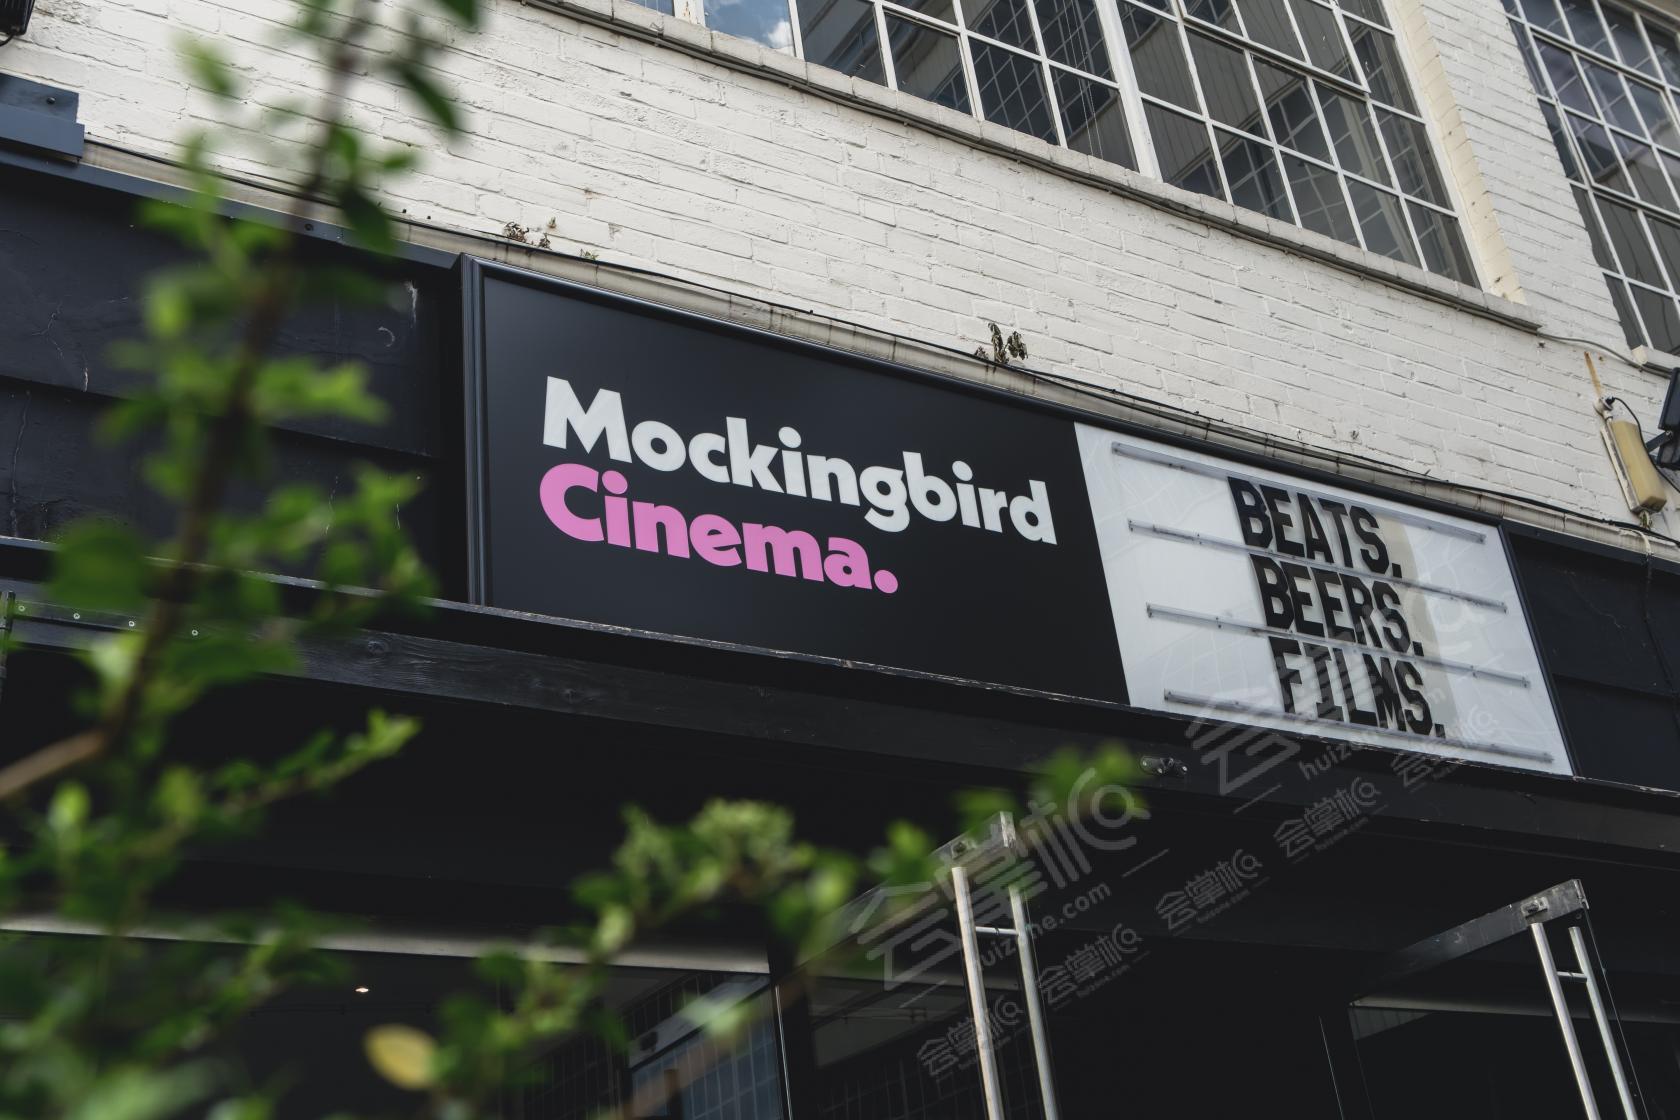 Mockingbird Cinema and Bar and Sobremesa Bar